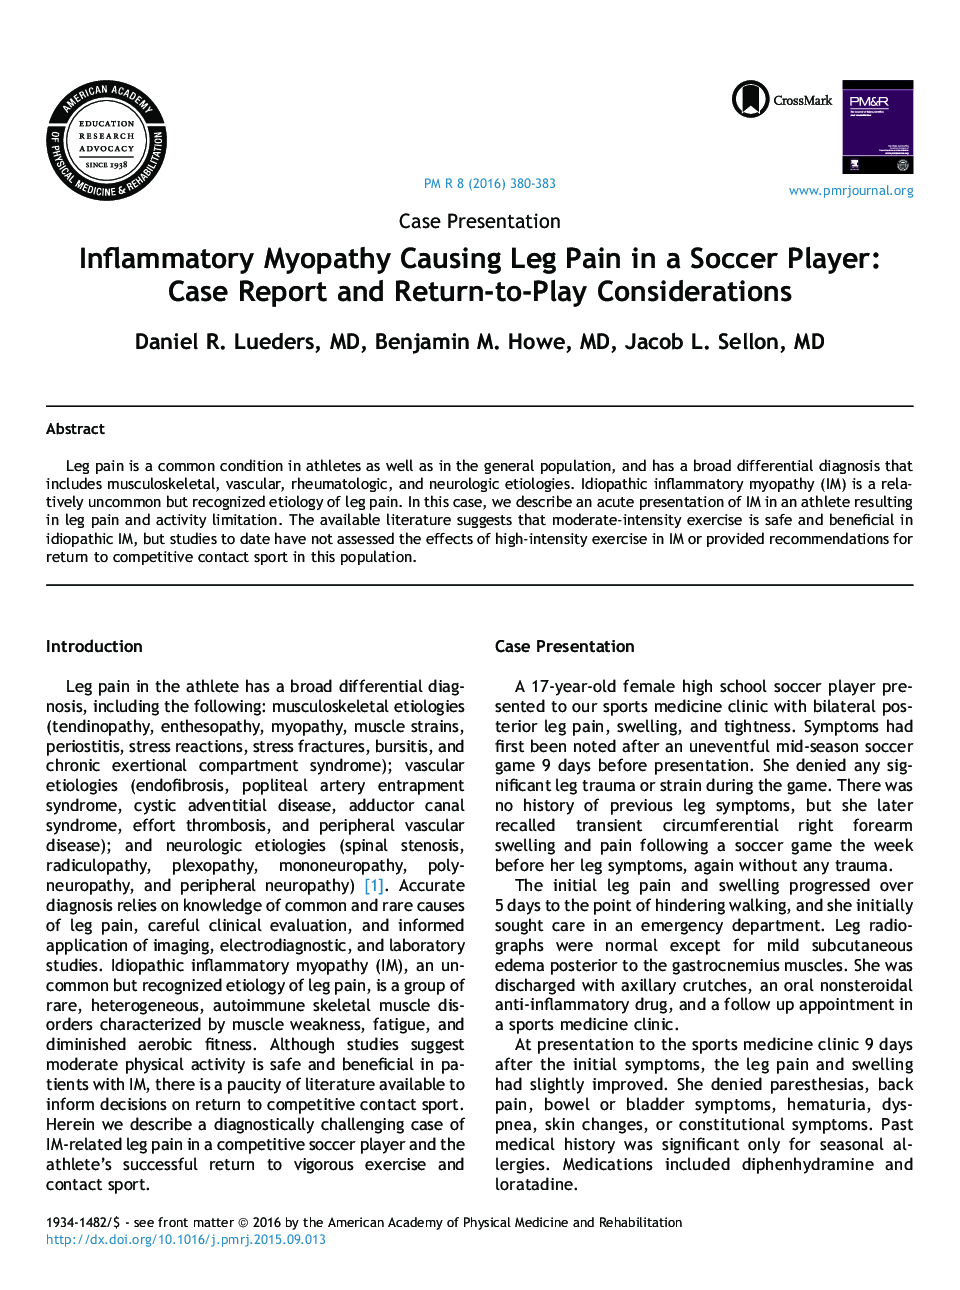 میوپاتی التهابی باعث پا درد در فوتبالیست ها می شود: گزارش موردی و ملاحظات بازگشت به بازی 